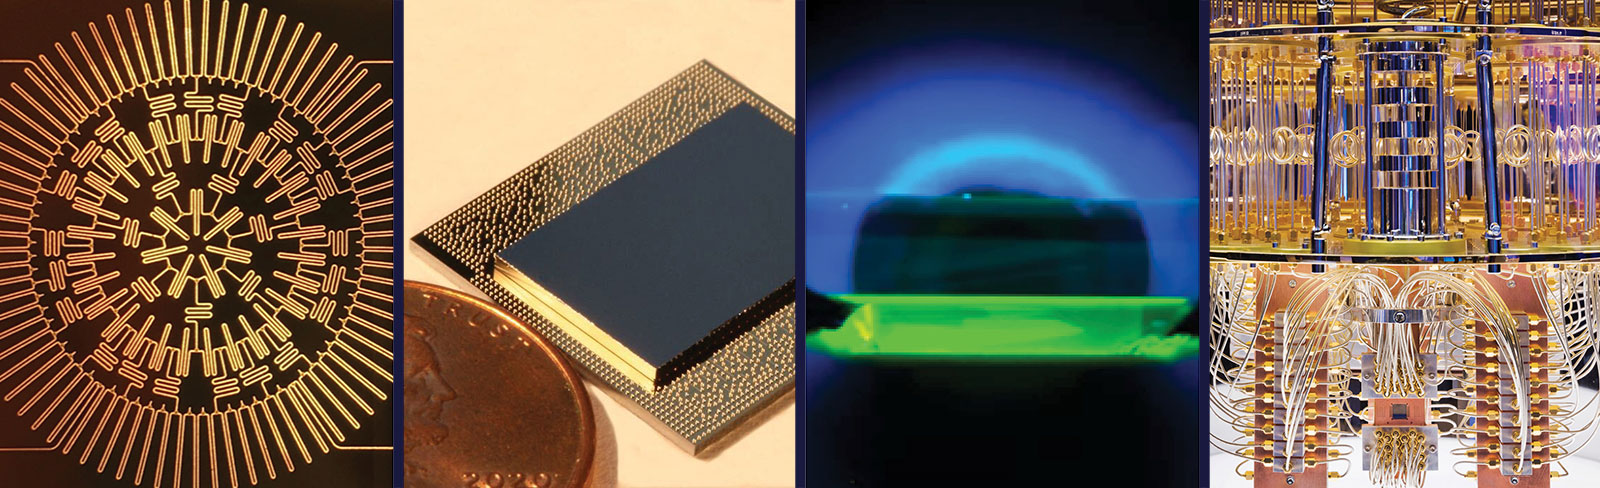 photos of quantum devices